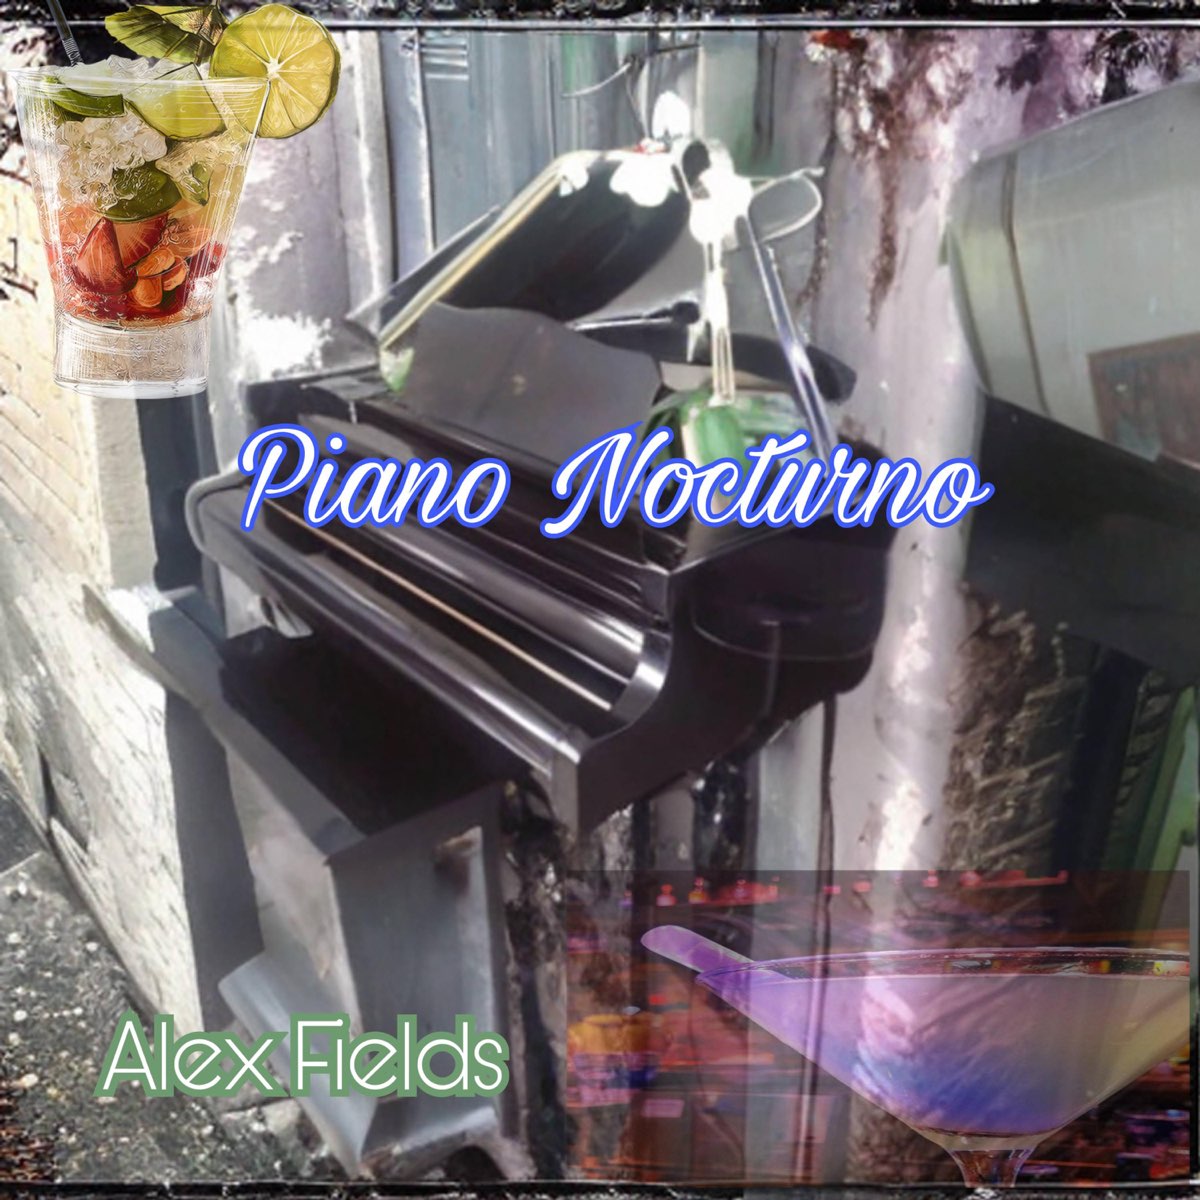 Piano Nocturno - Single - Album by Alex Fields - Apple Music